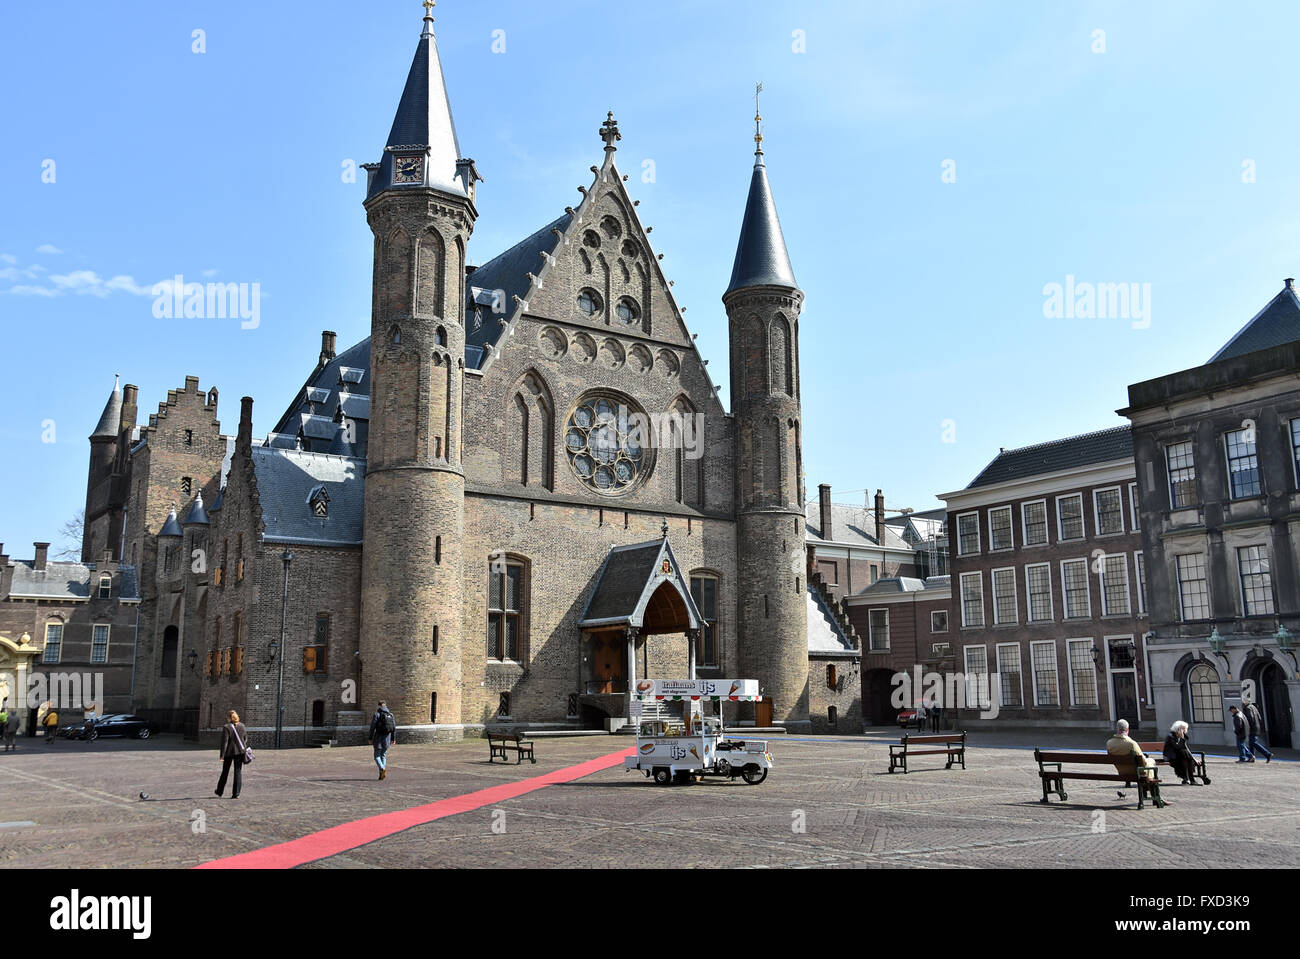 Le Parlement néerlandais de La Haye Binnenhof ( y compris la Ridderzaal (salle des Chevaliers), du Sénat et de la Chambre des représentants des Pays-Bas ) Banque D'Images